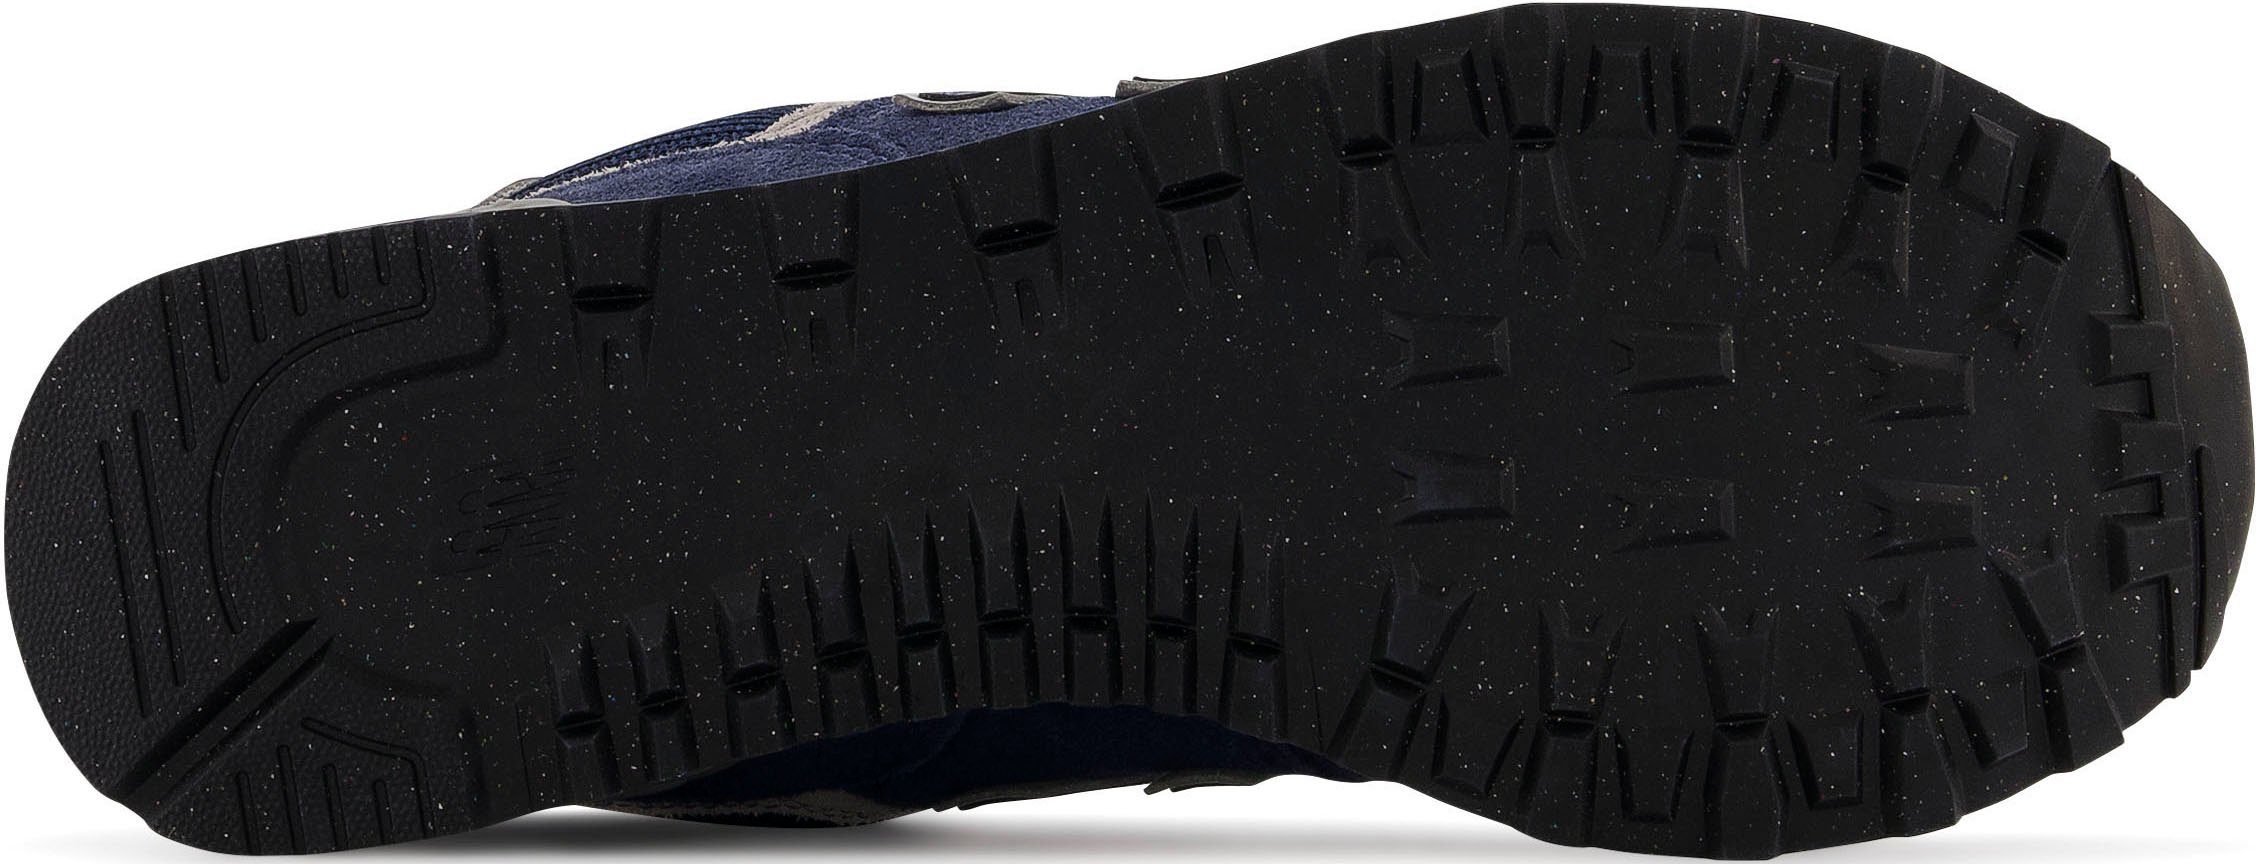 Sneaker Balance Core navy-grau-weiß WL574 New